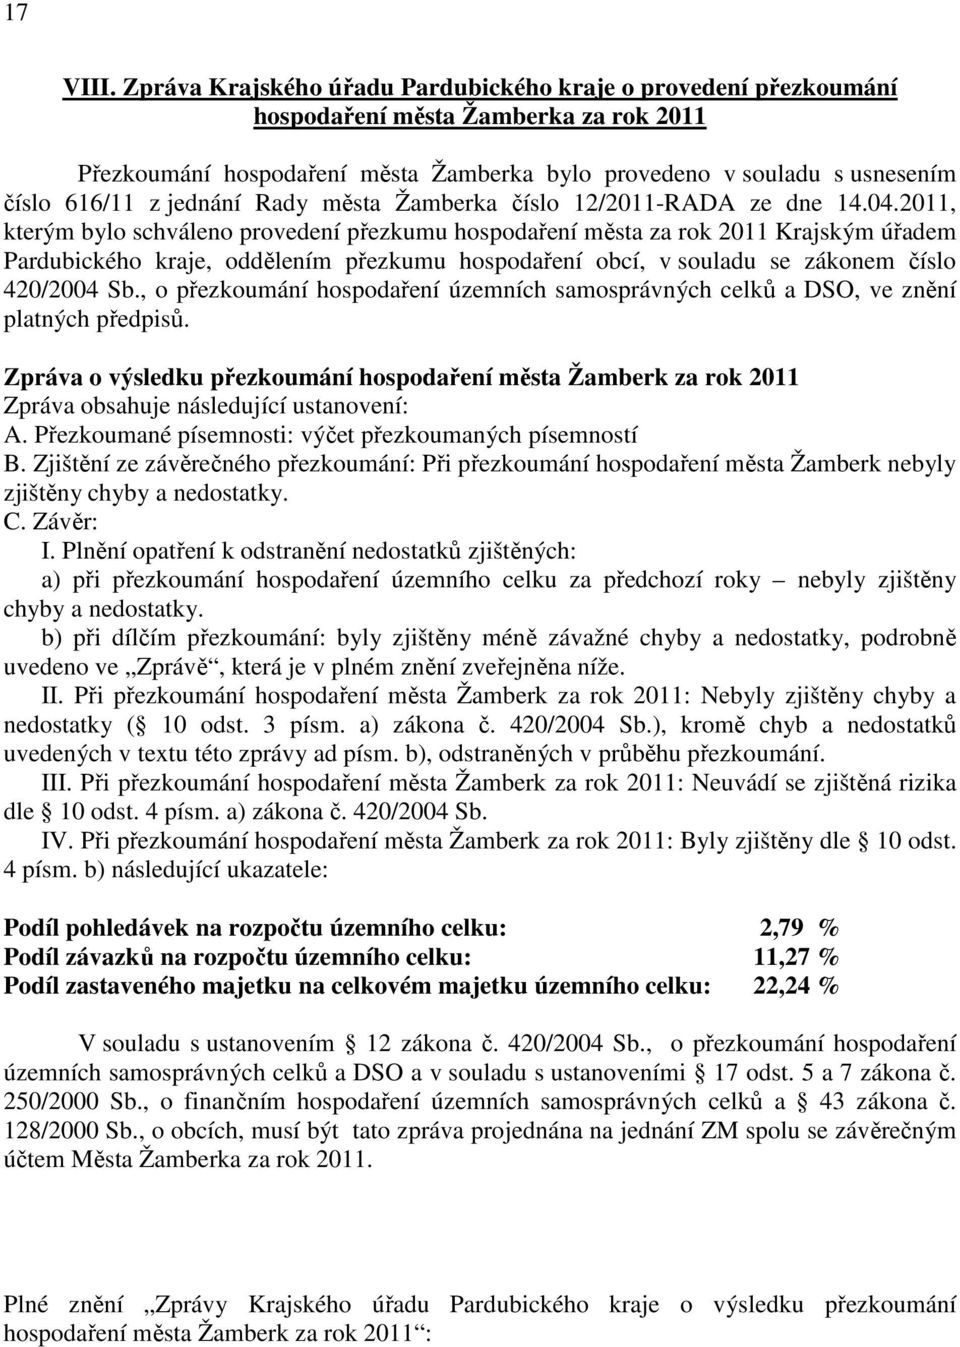 jednání Rady města Žamberka číslo 12/2011-RADA ze dne 14.04.